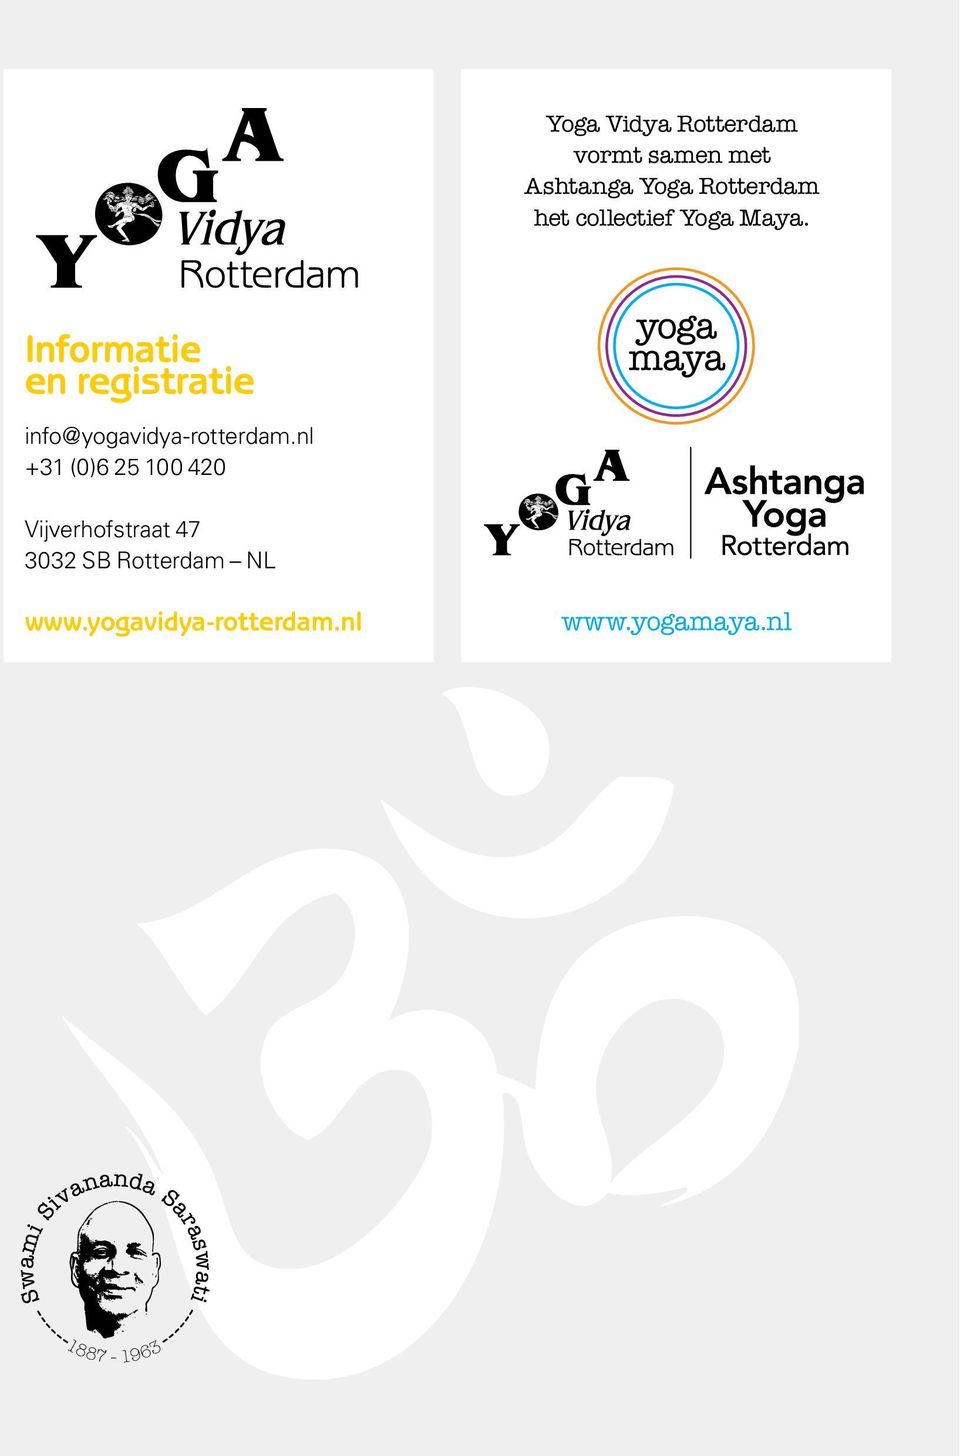 Informatie en registratie info@yogavidya-rotterdam.